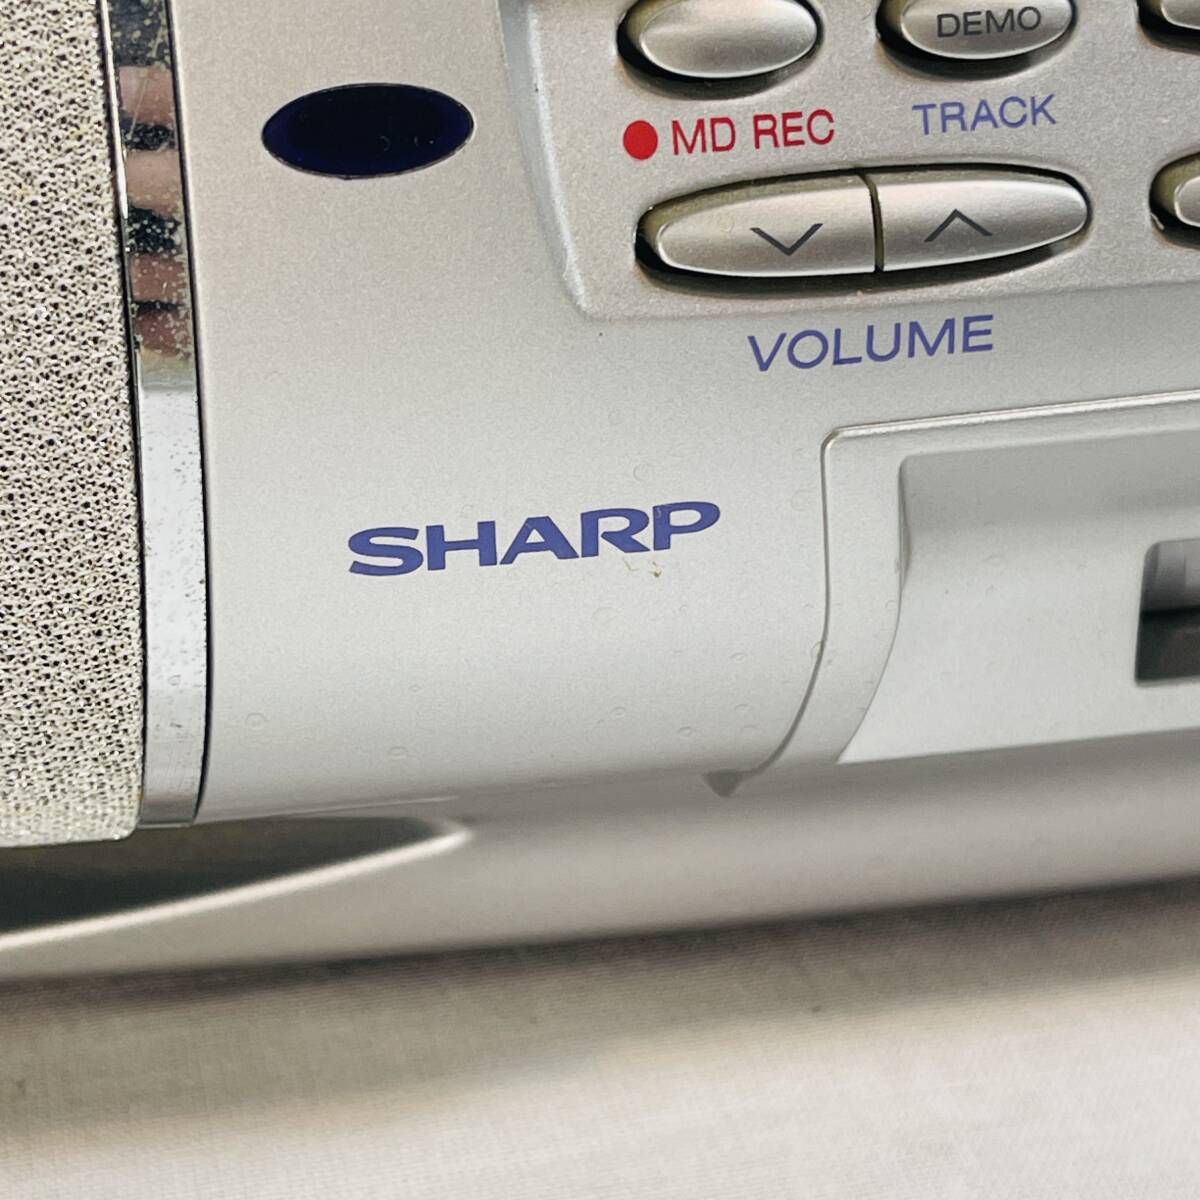 シャープ SHARP MD/CDシステム MD-F150-S 2001年製 通電確認 CD再生確認済み テープ不良 MD動作確認未 USED品 1スタ 1円ショップ _画像8